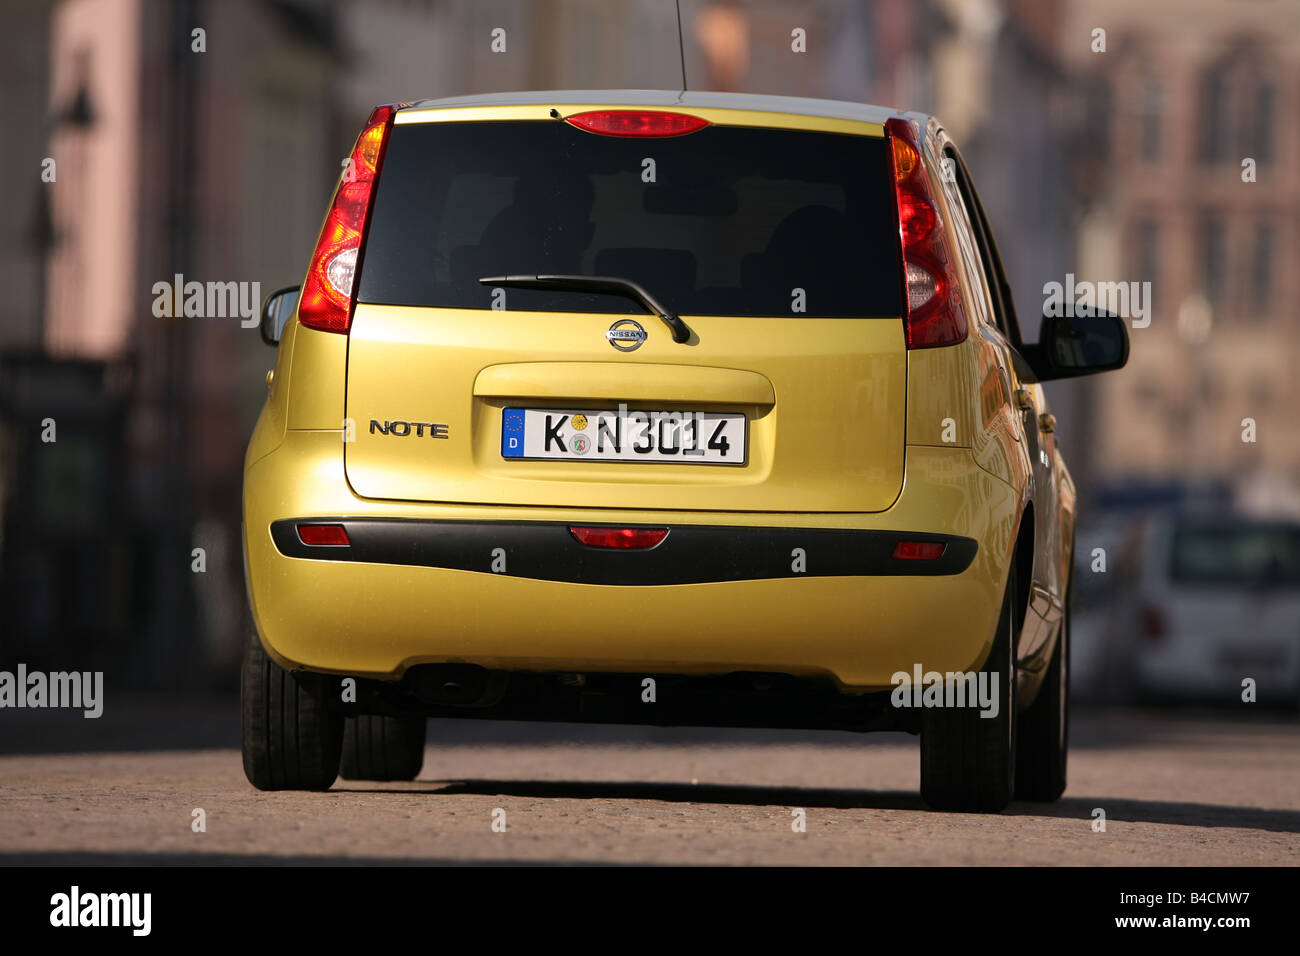 Nissan Bewertung 1,4, Modelljahr 2006-gelb, fahren, diagonal von hinten, Rückansicht, Stadt Stockfoto